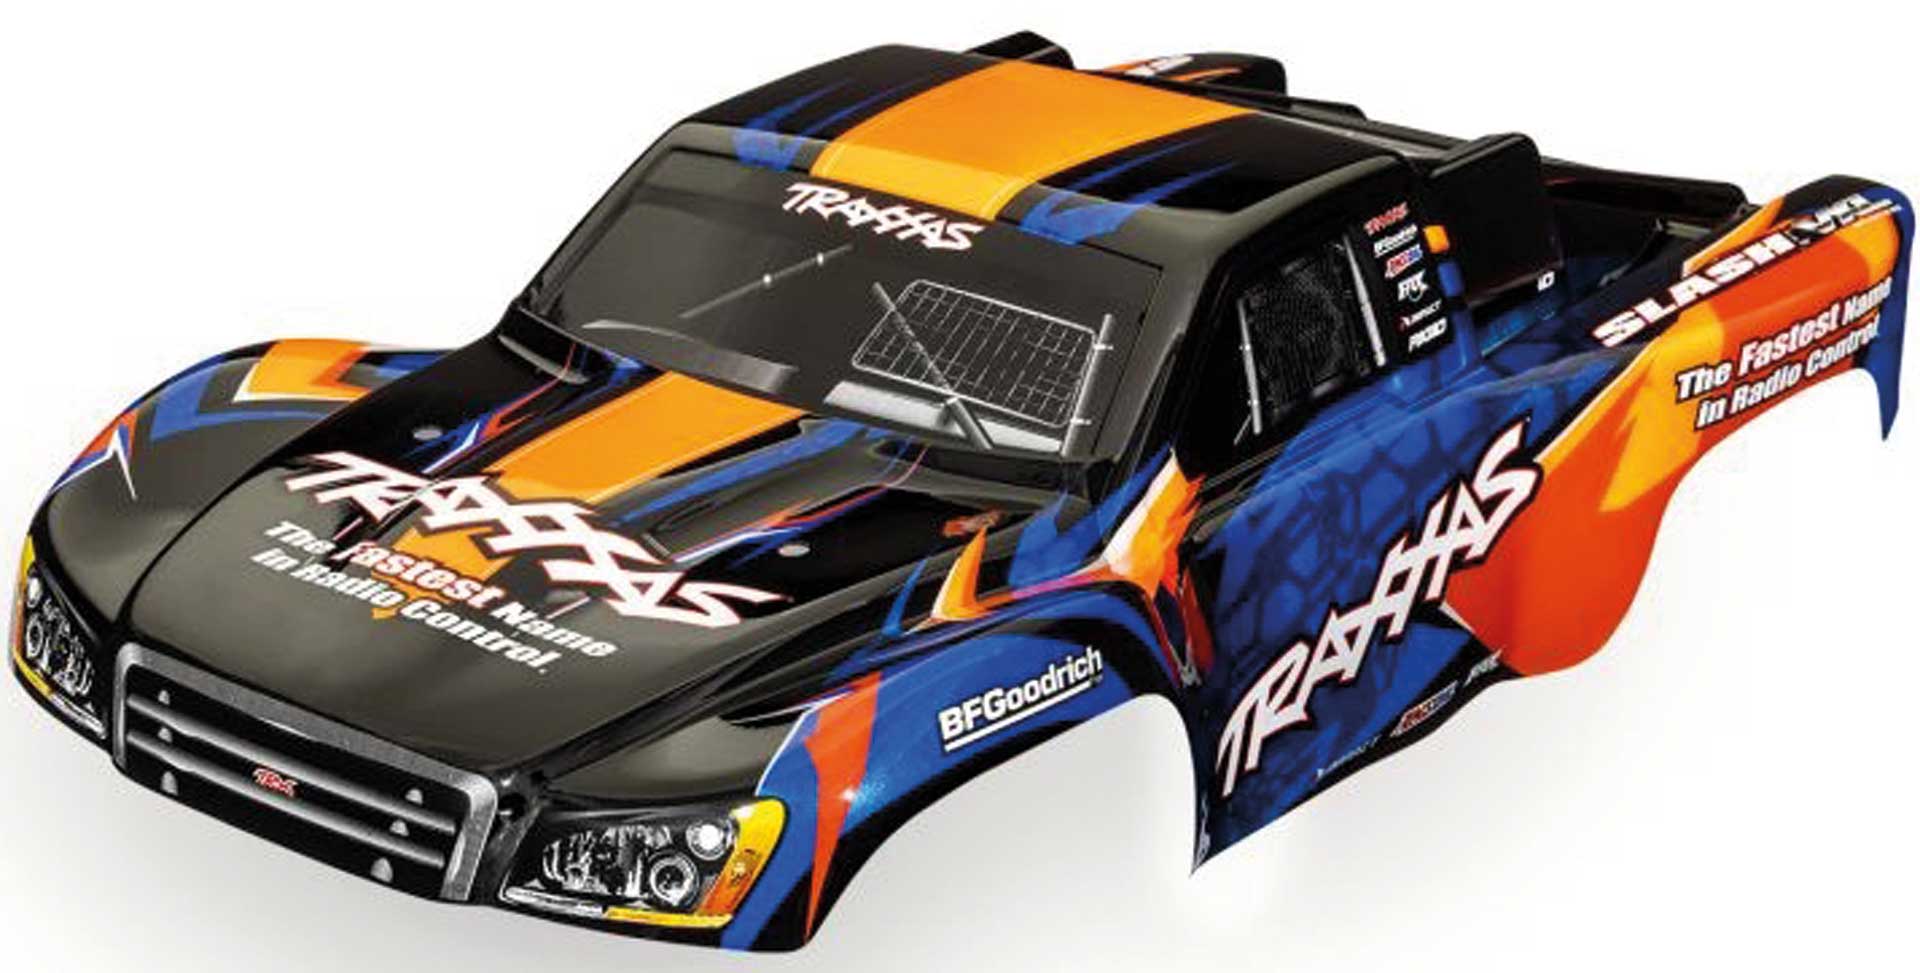 TRAXXAS Carrosserie Slash 2WD/4WD Orange/Bleu lackiert